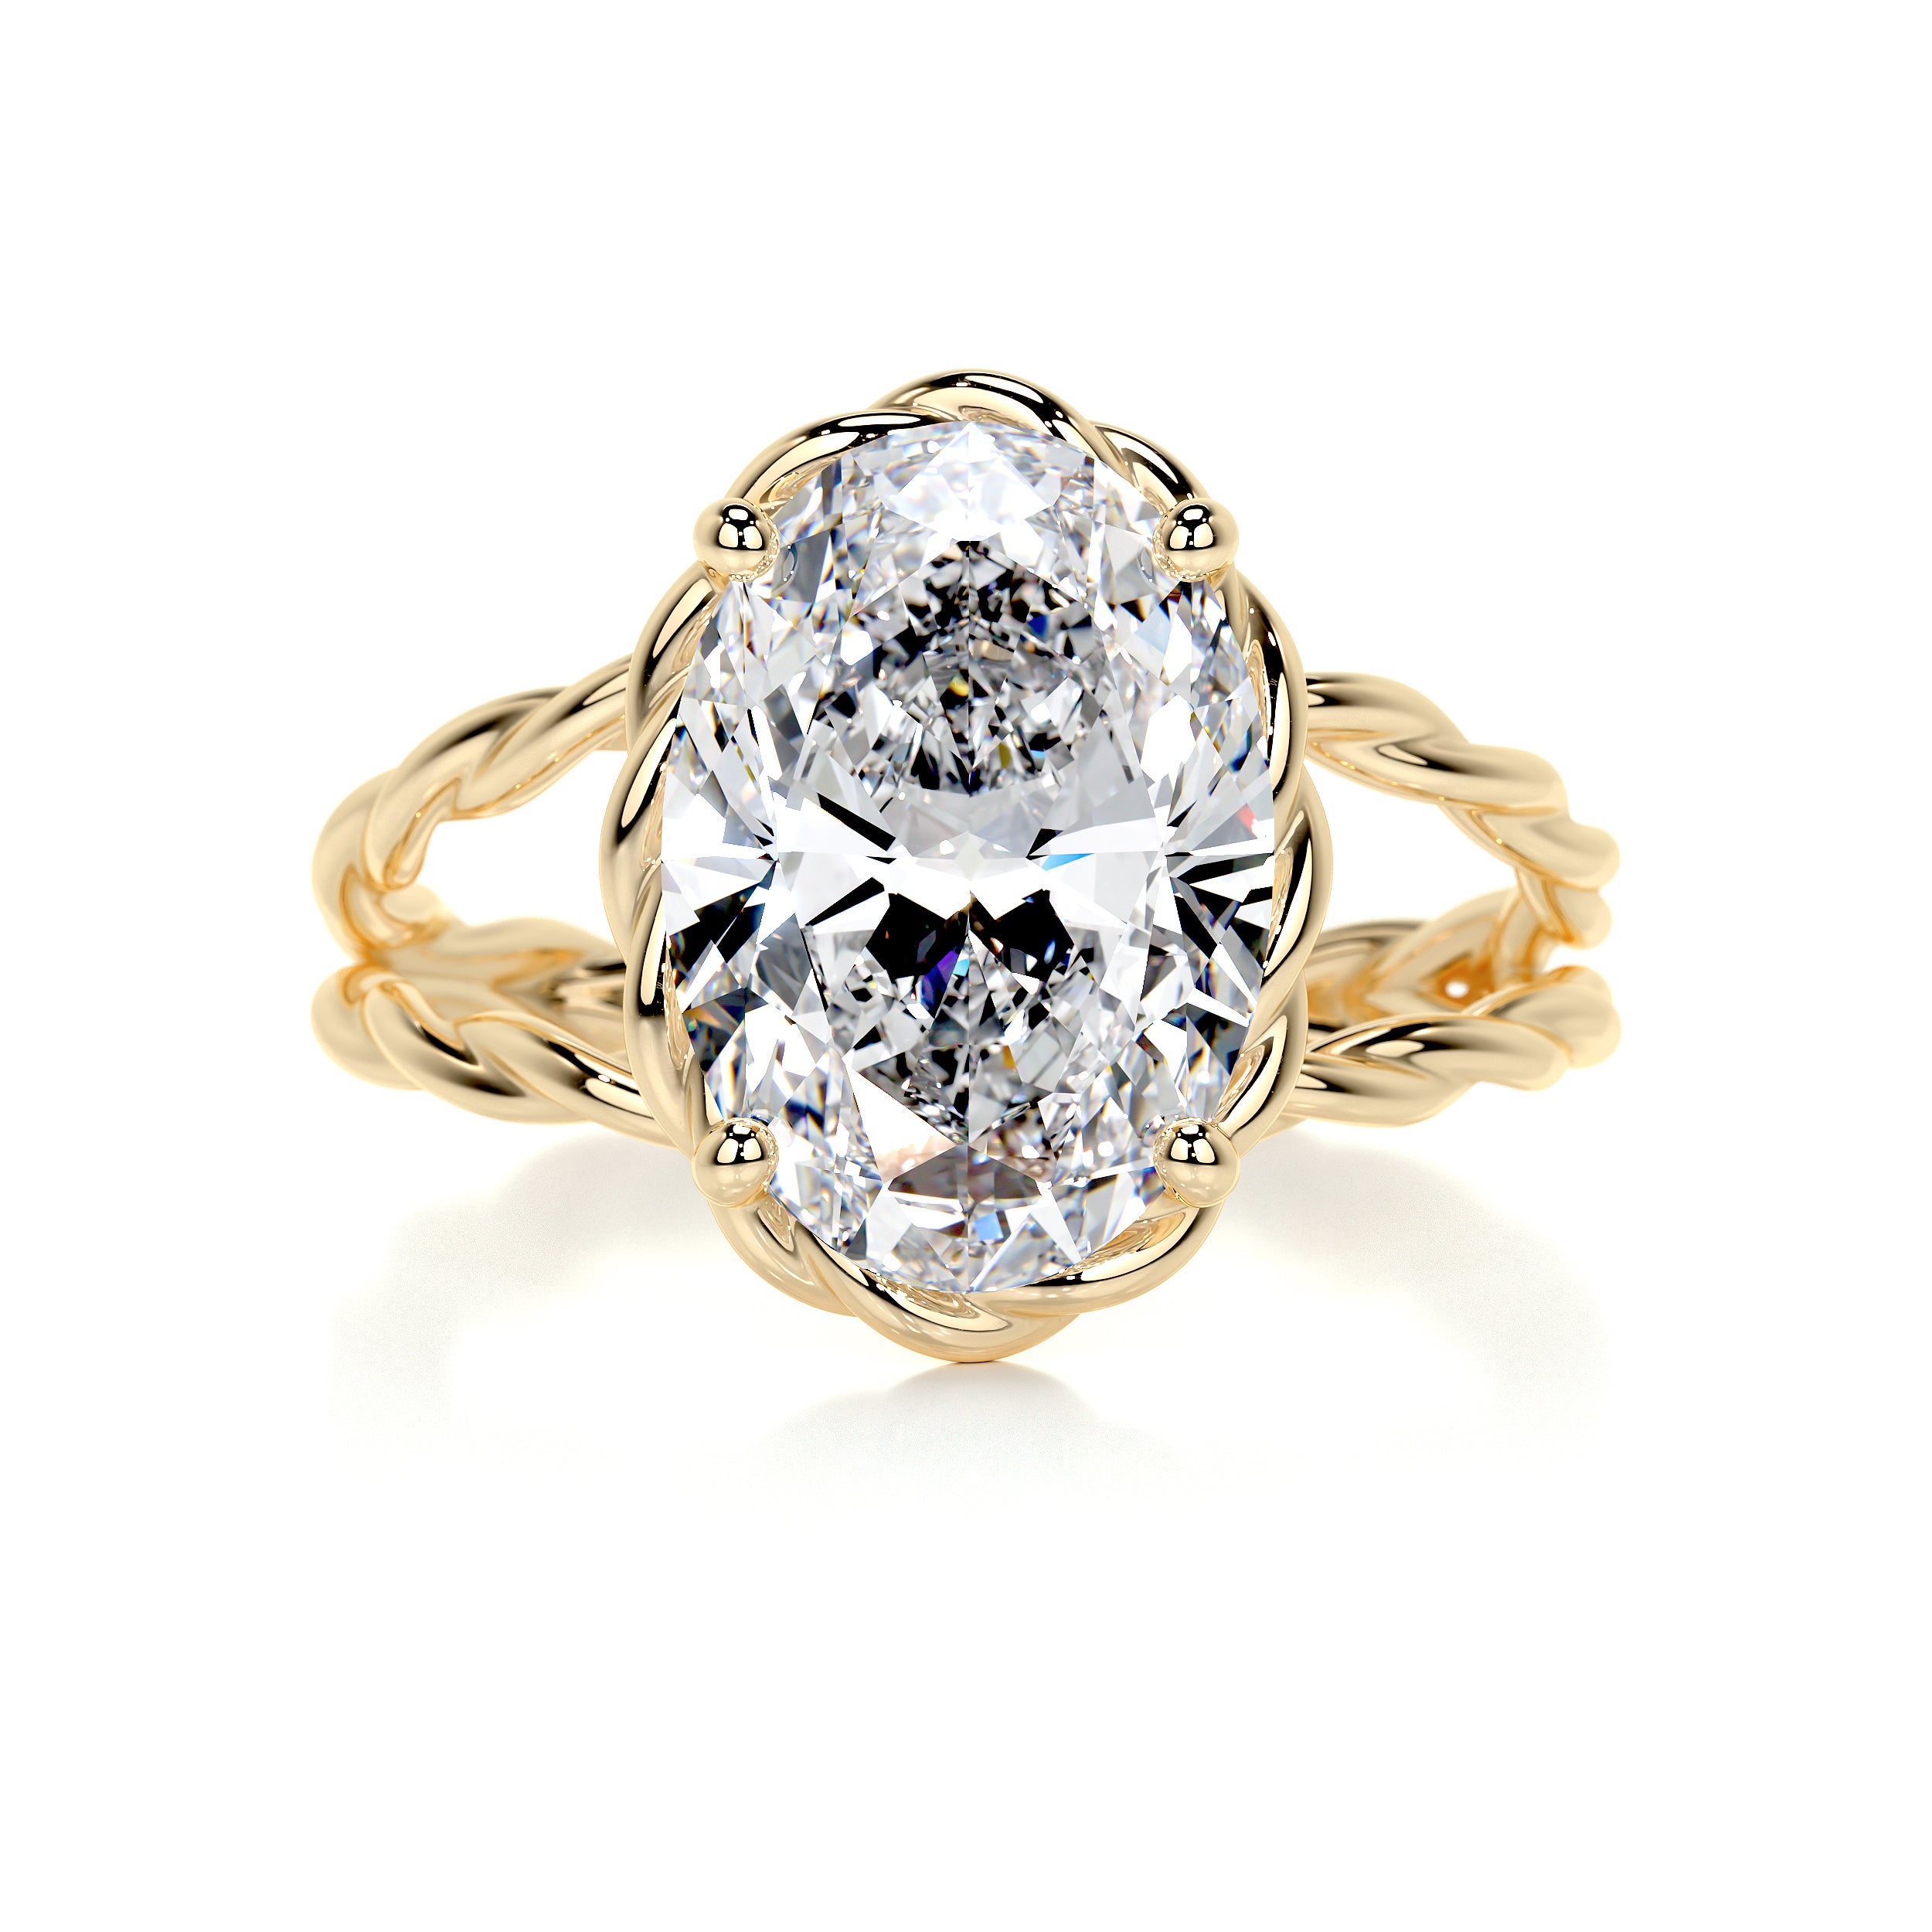 Milani Diamond Engagement Ring   (3 Carat) -18K Yellow Gold